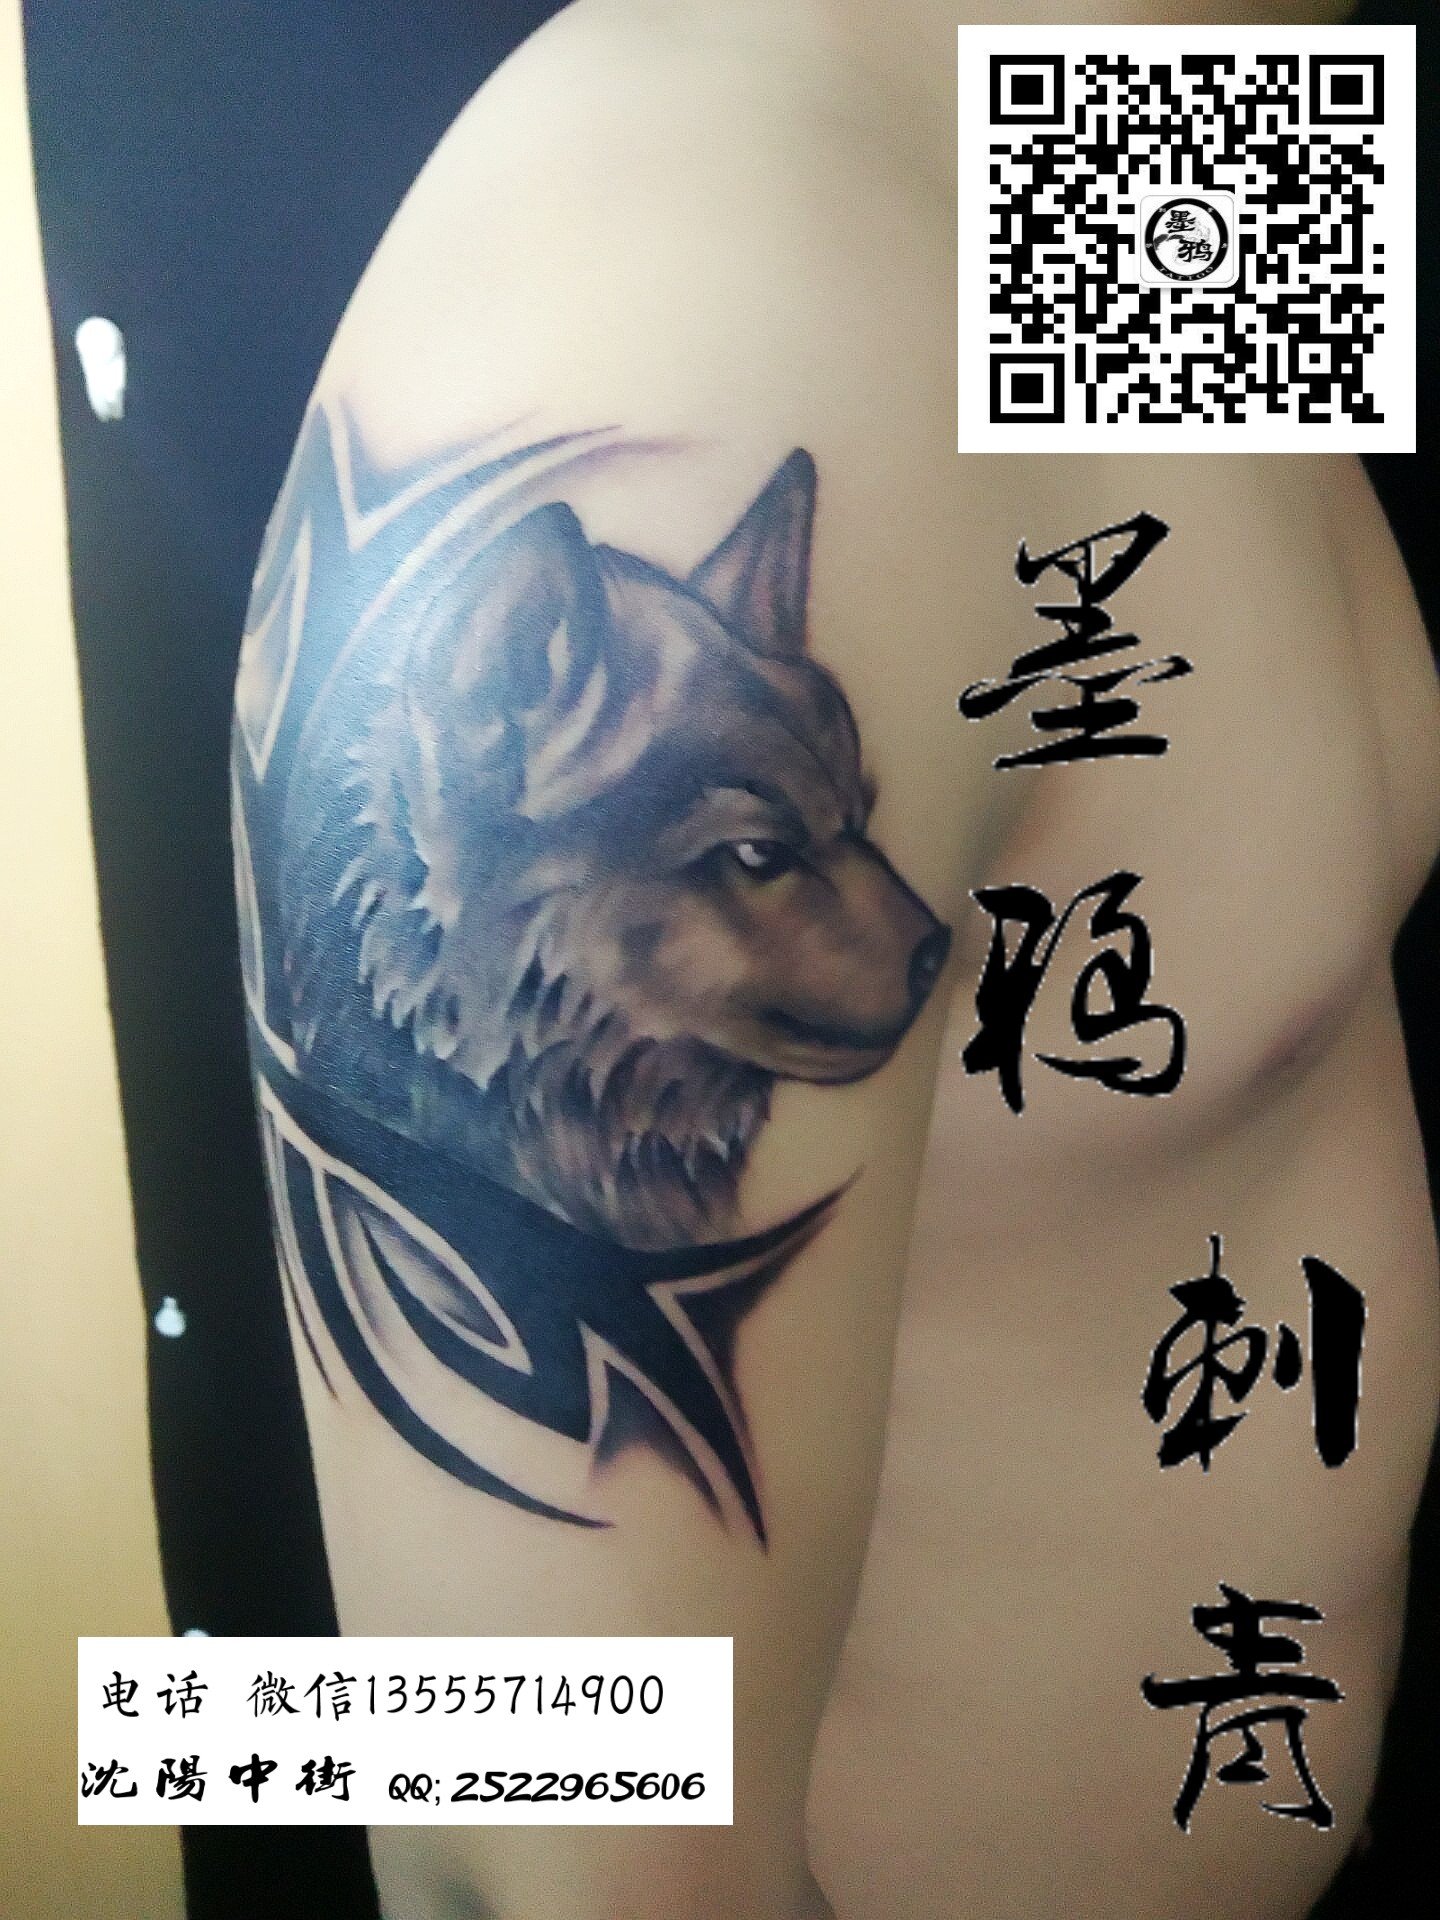 狼纹身刺青图案大全 _排行榜大全